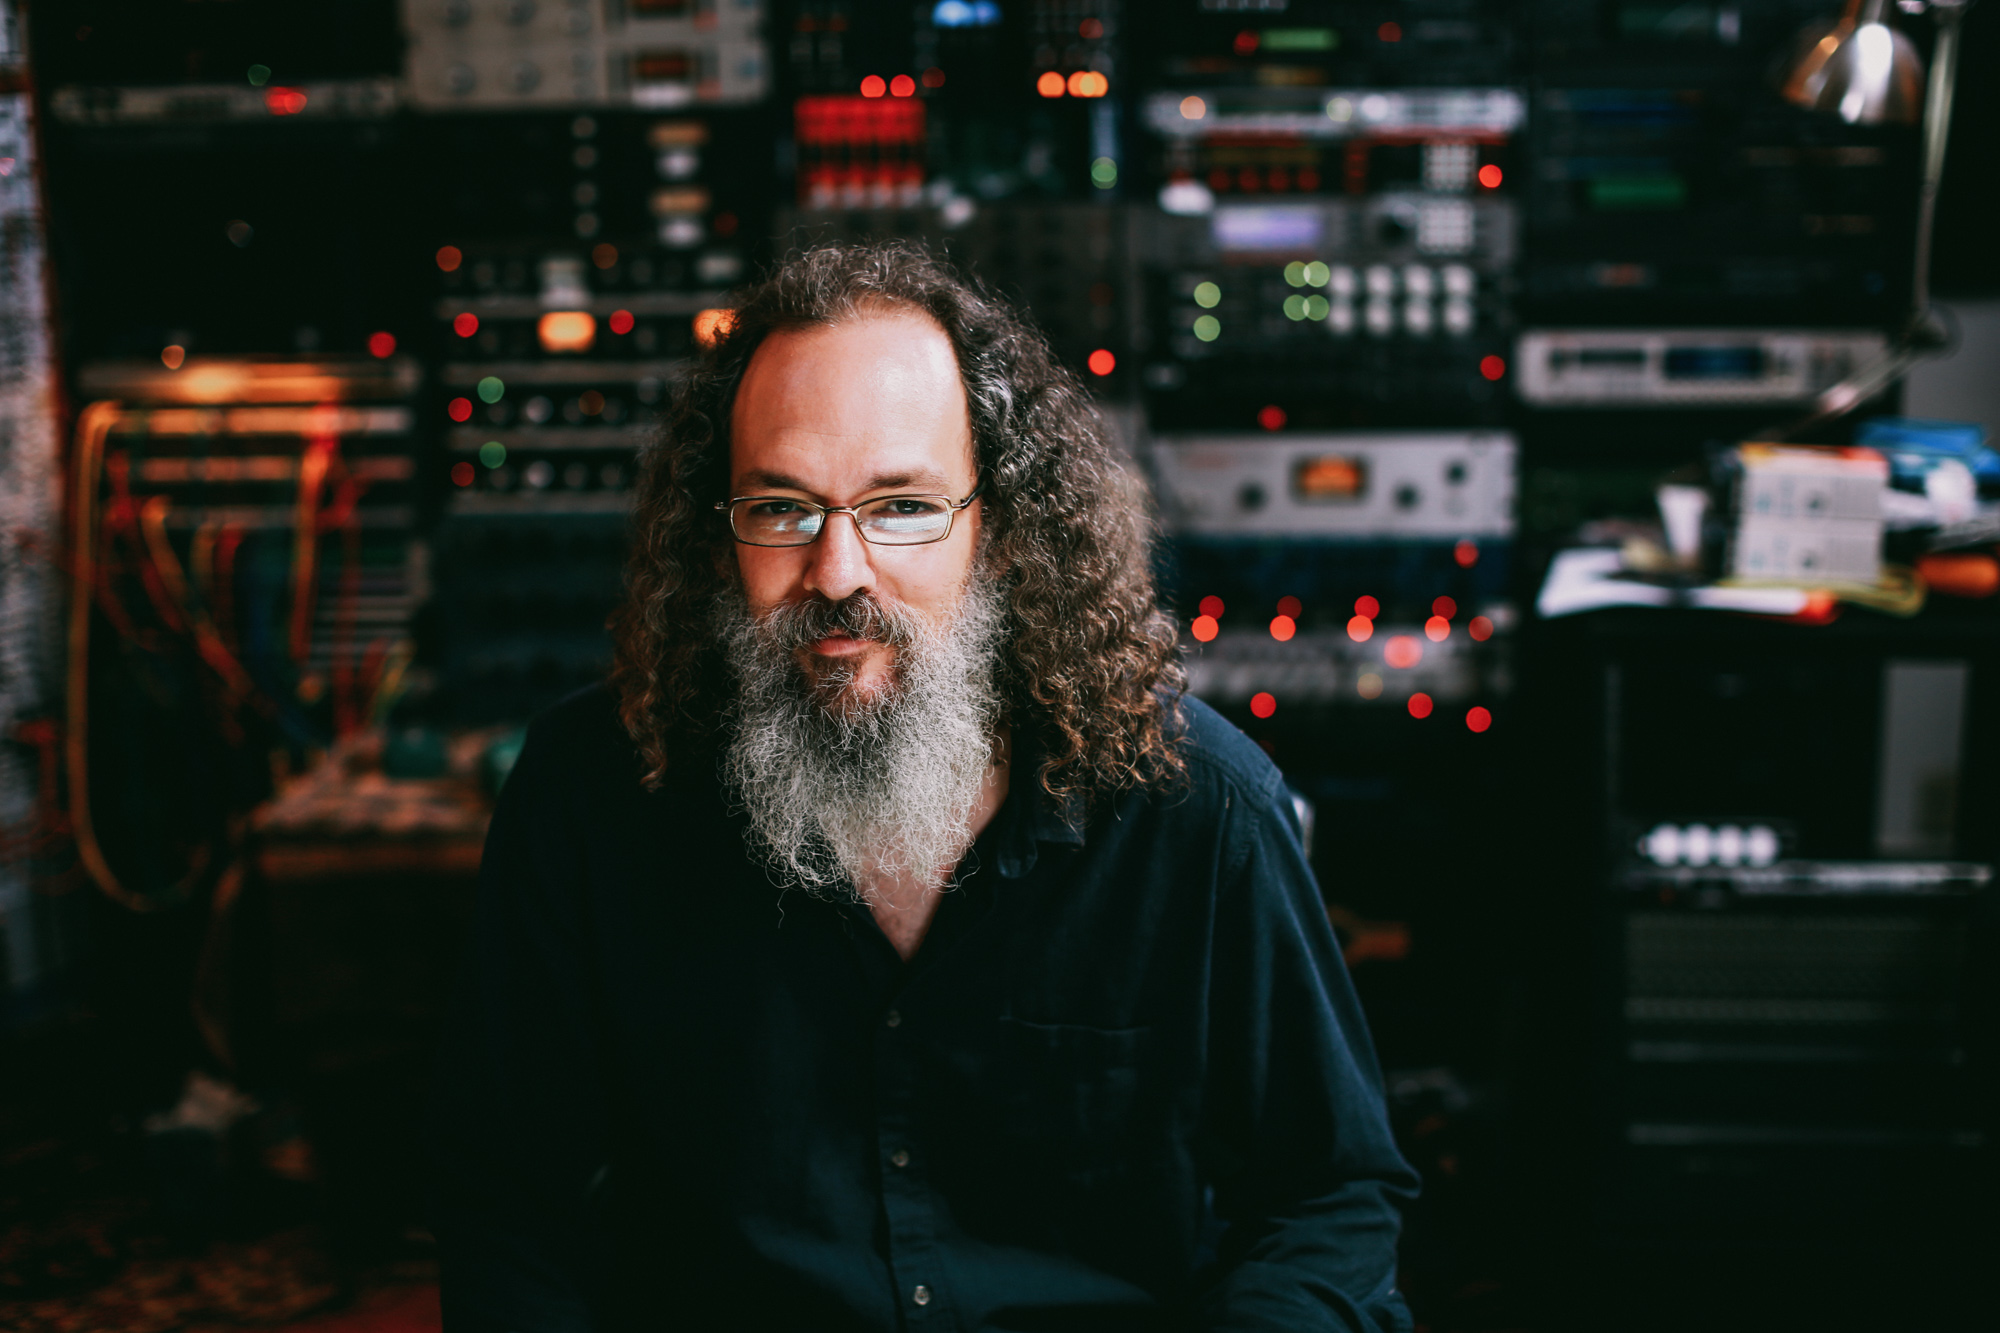 Andrew Scheps, the music mixer